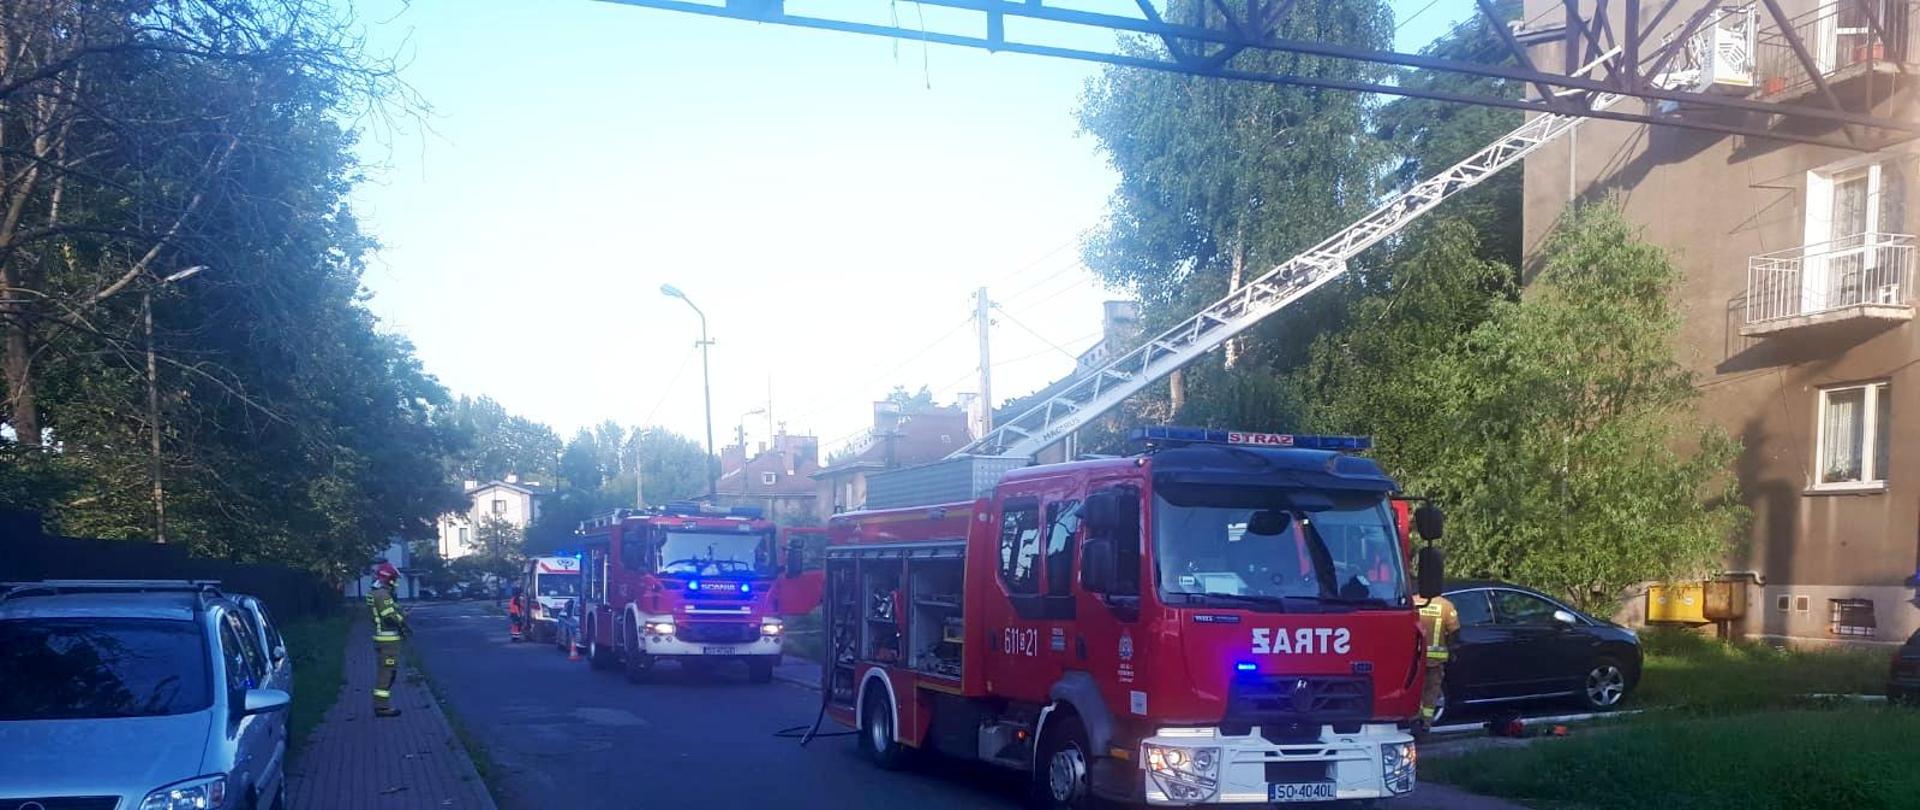 Zdjęcie przedstawia pojazdy pożarnicze ustawione na ulicy przy domu wielorodzinnym podczas akcji ratowniczo - gaśniczej 